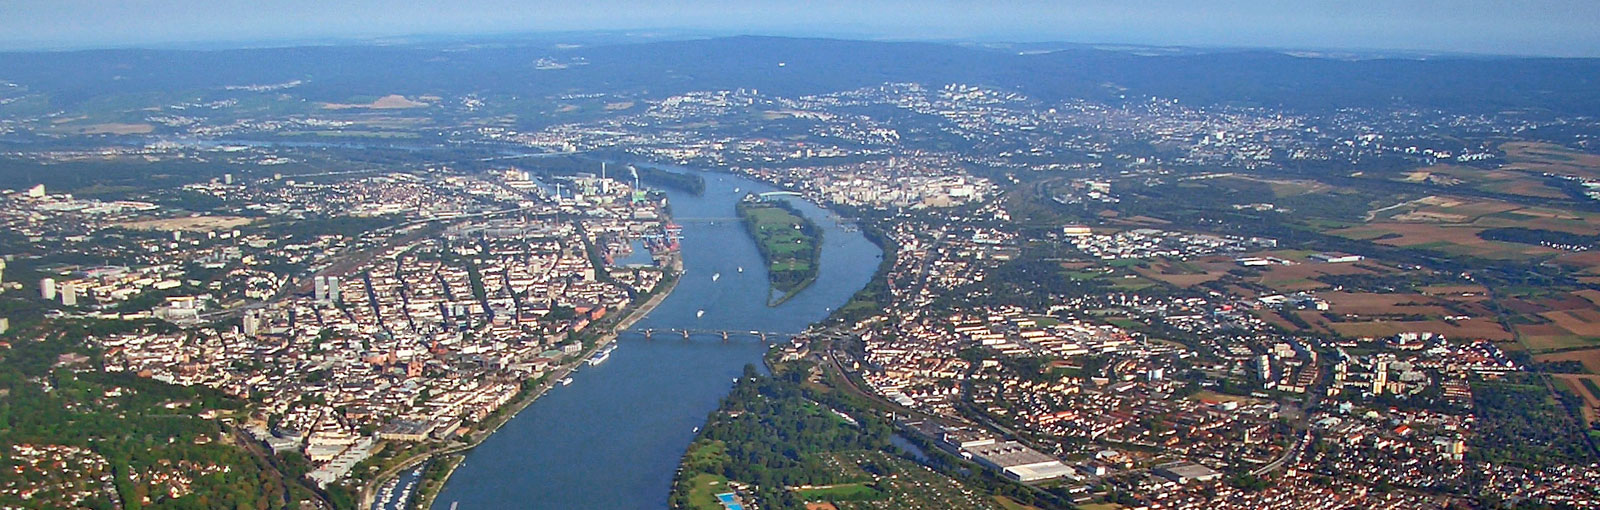 Mainz aus der Luft